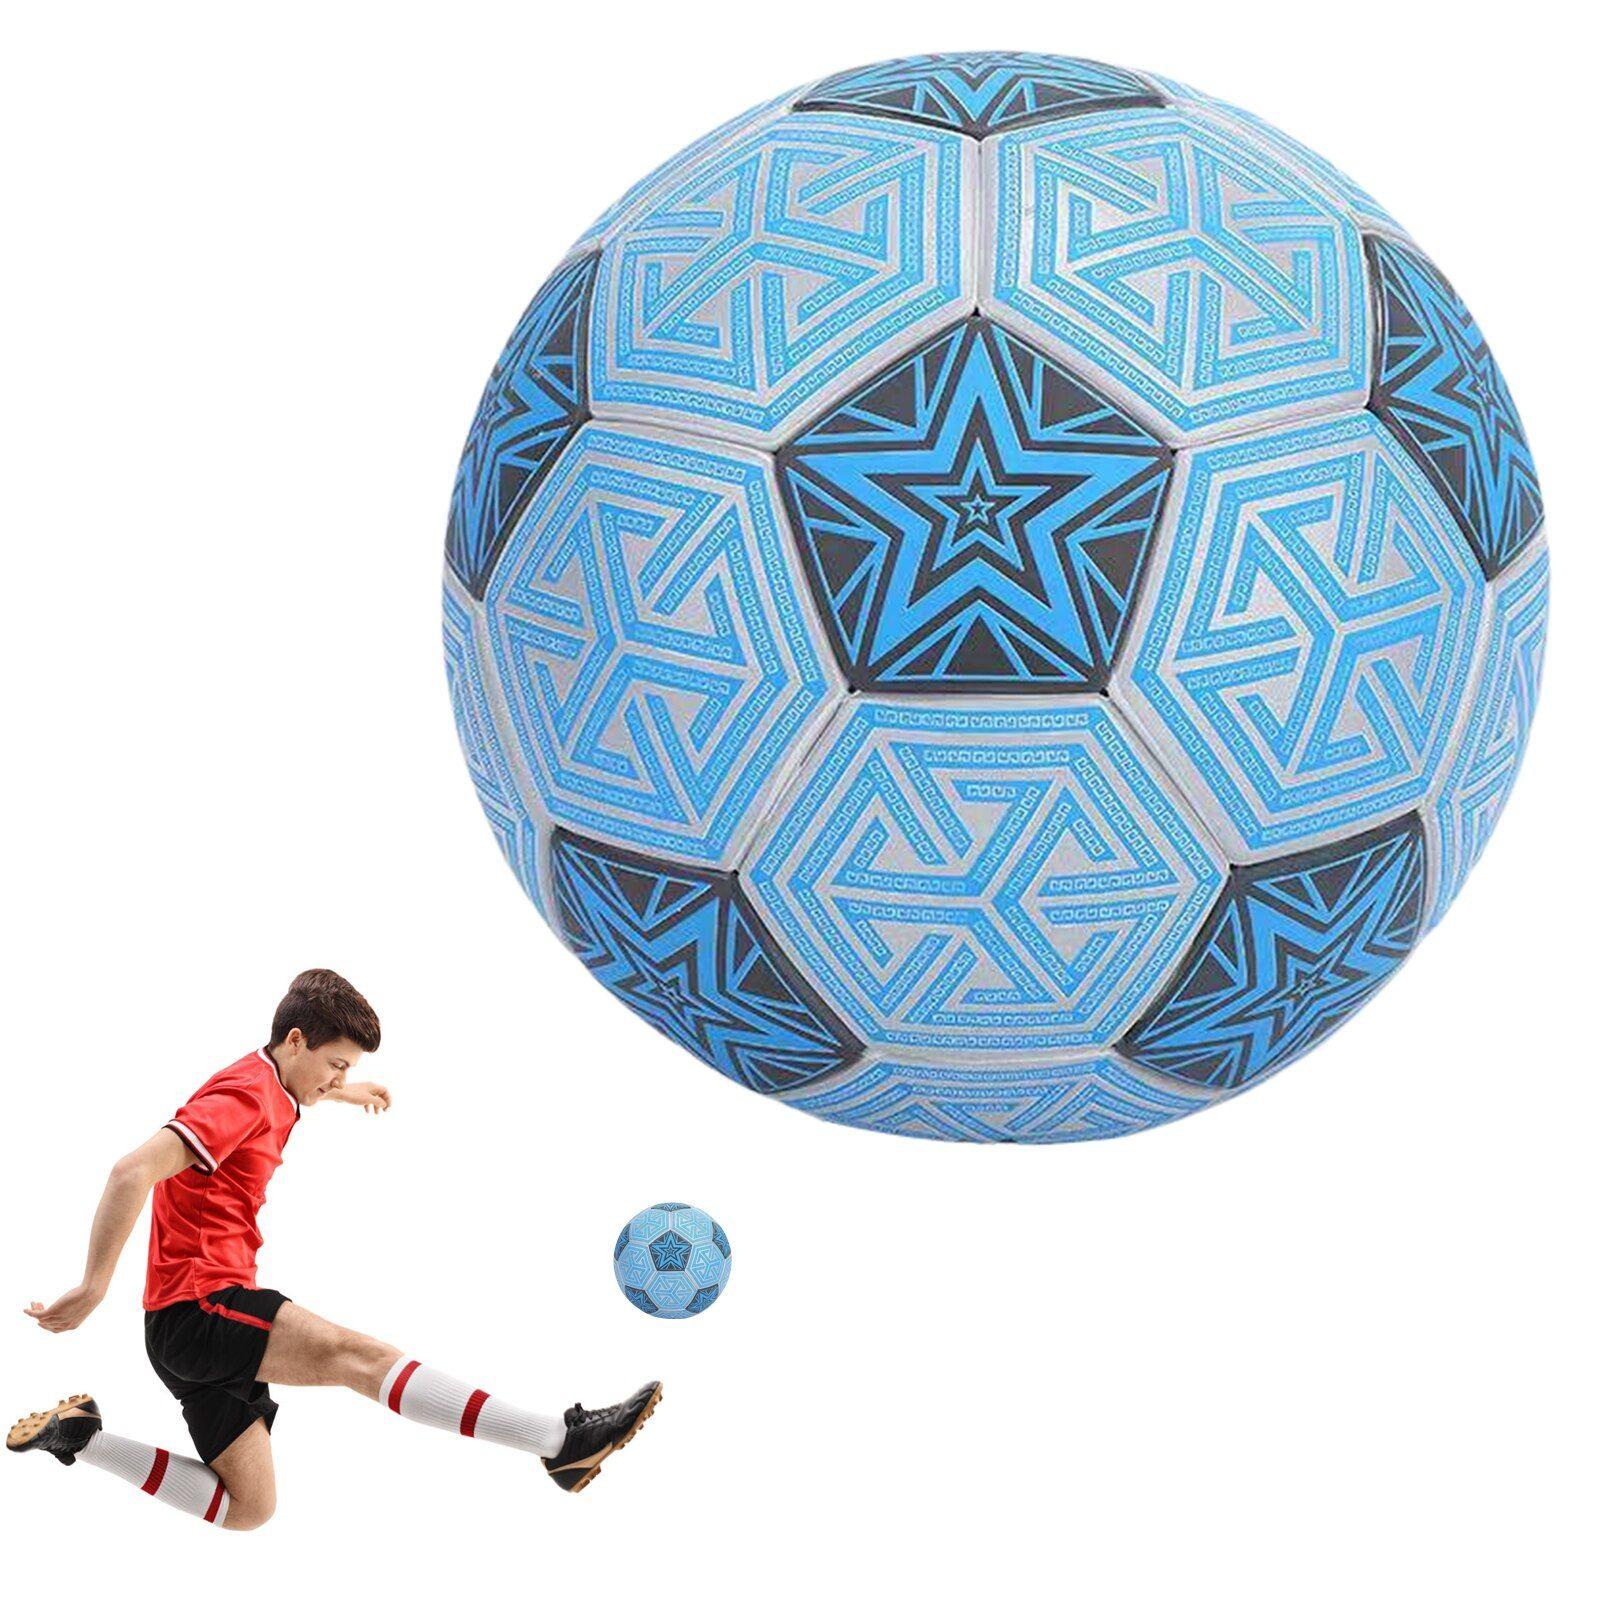 Ballon de Football Lumineux pour Enfant, Brille dans la Nuit